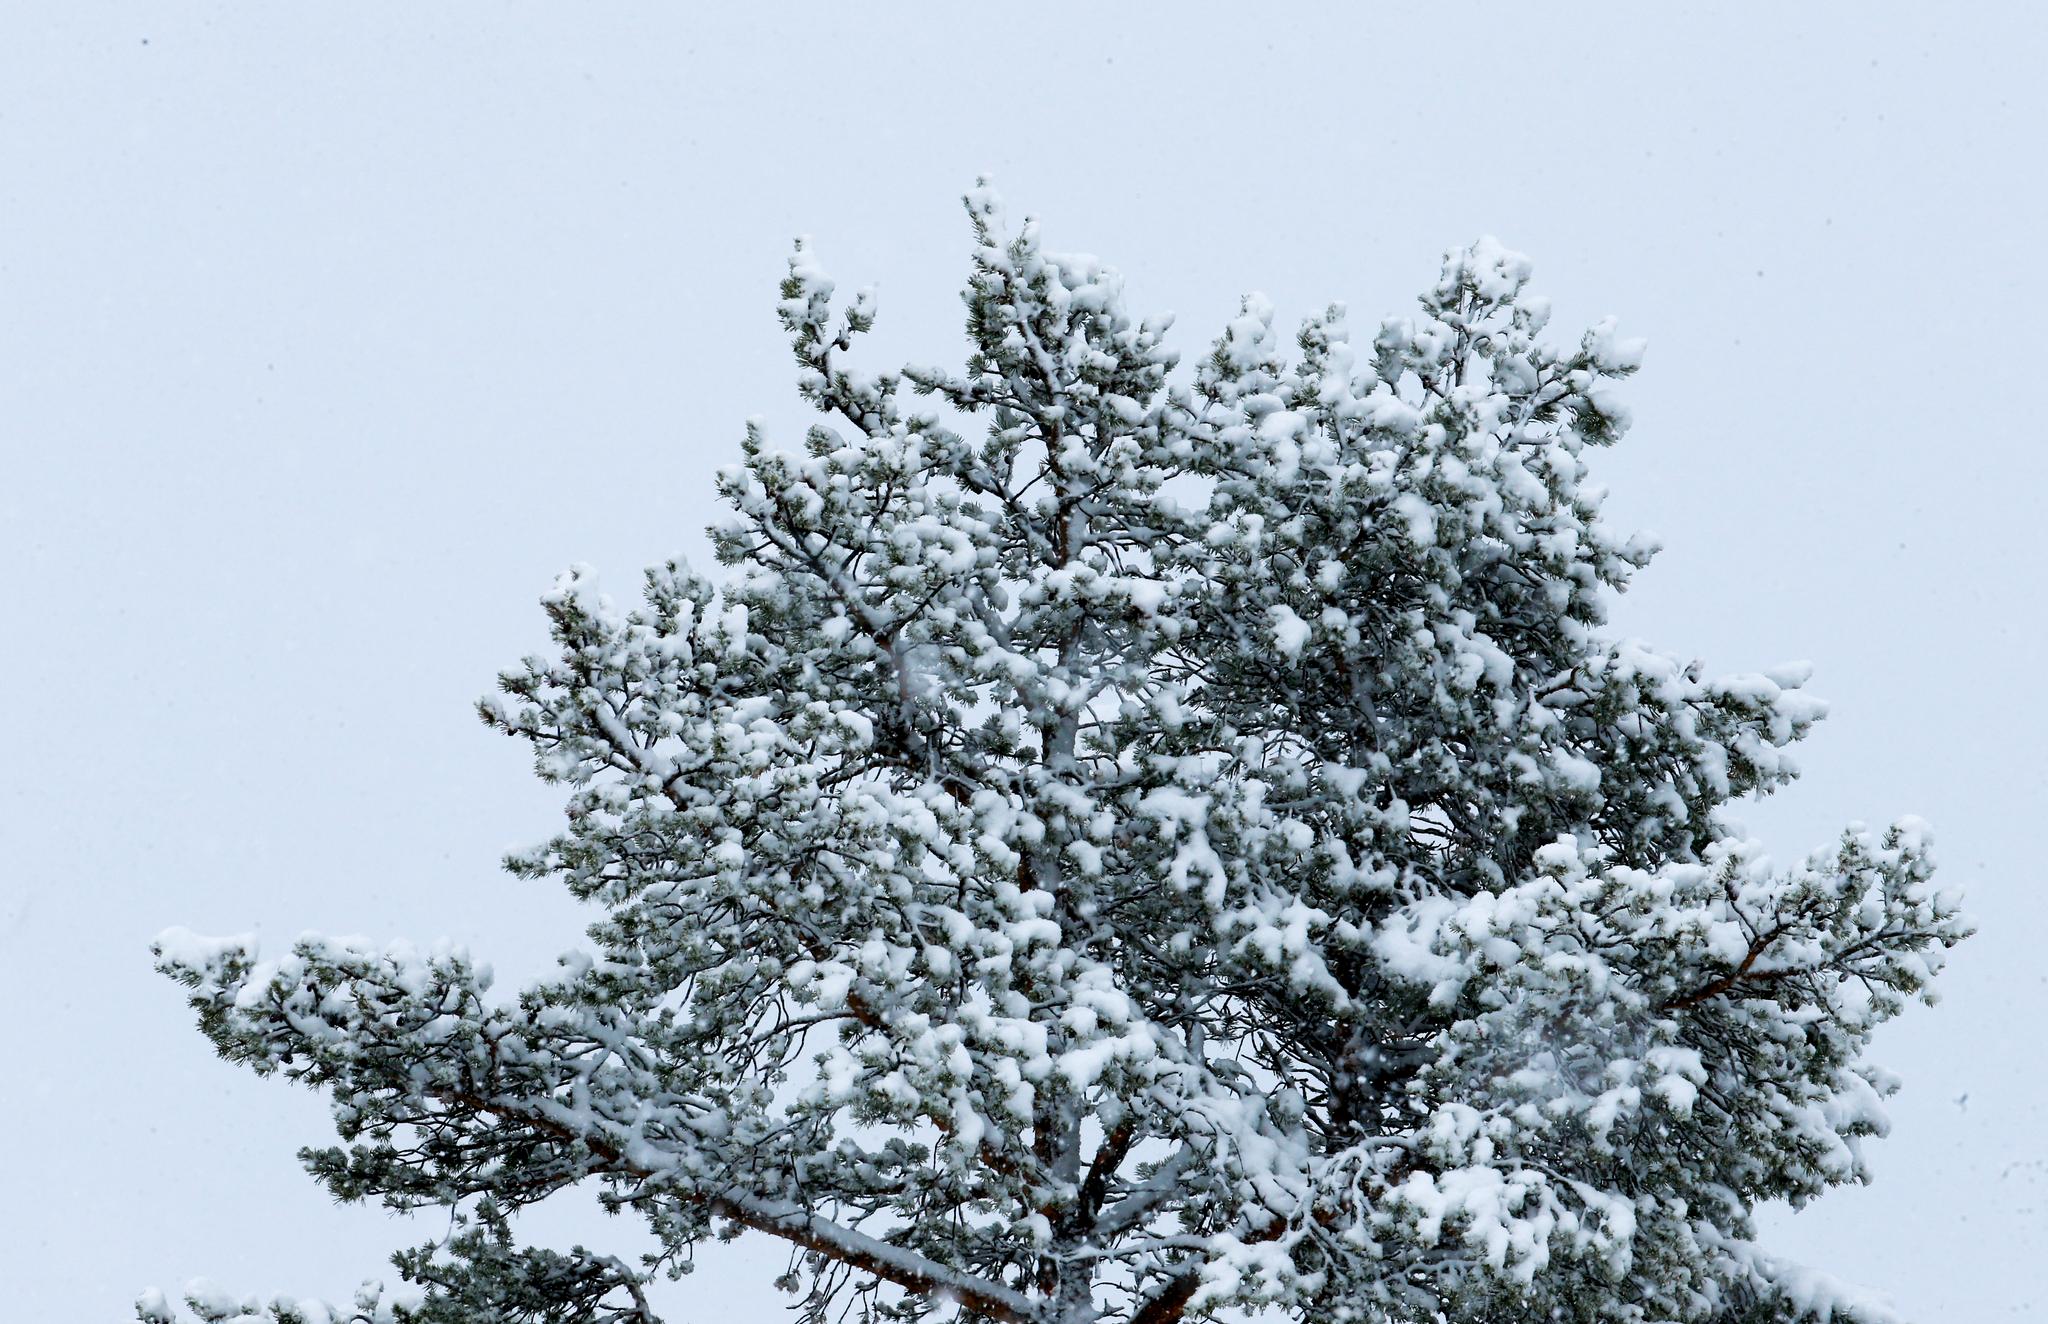 Fra lørdag morgen til søndag morgen ventes det mellom 15 og 35 cm med snø i Agder og Telemark. 